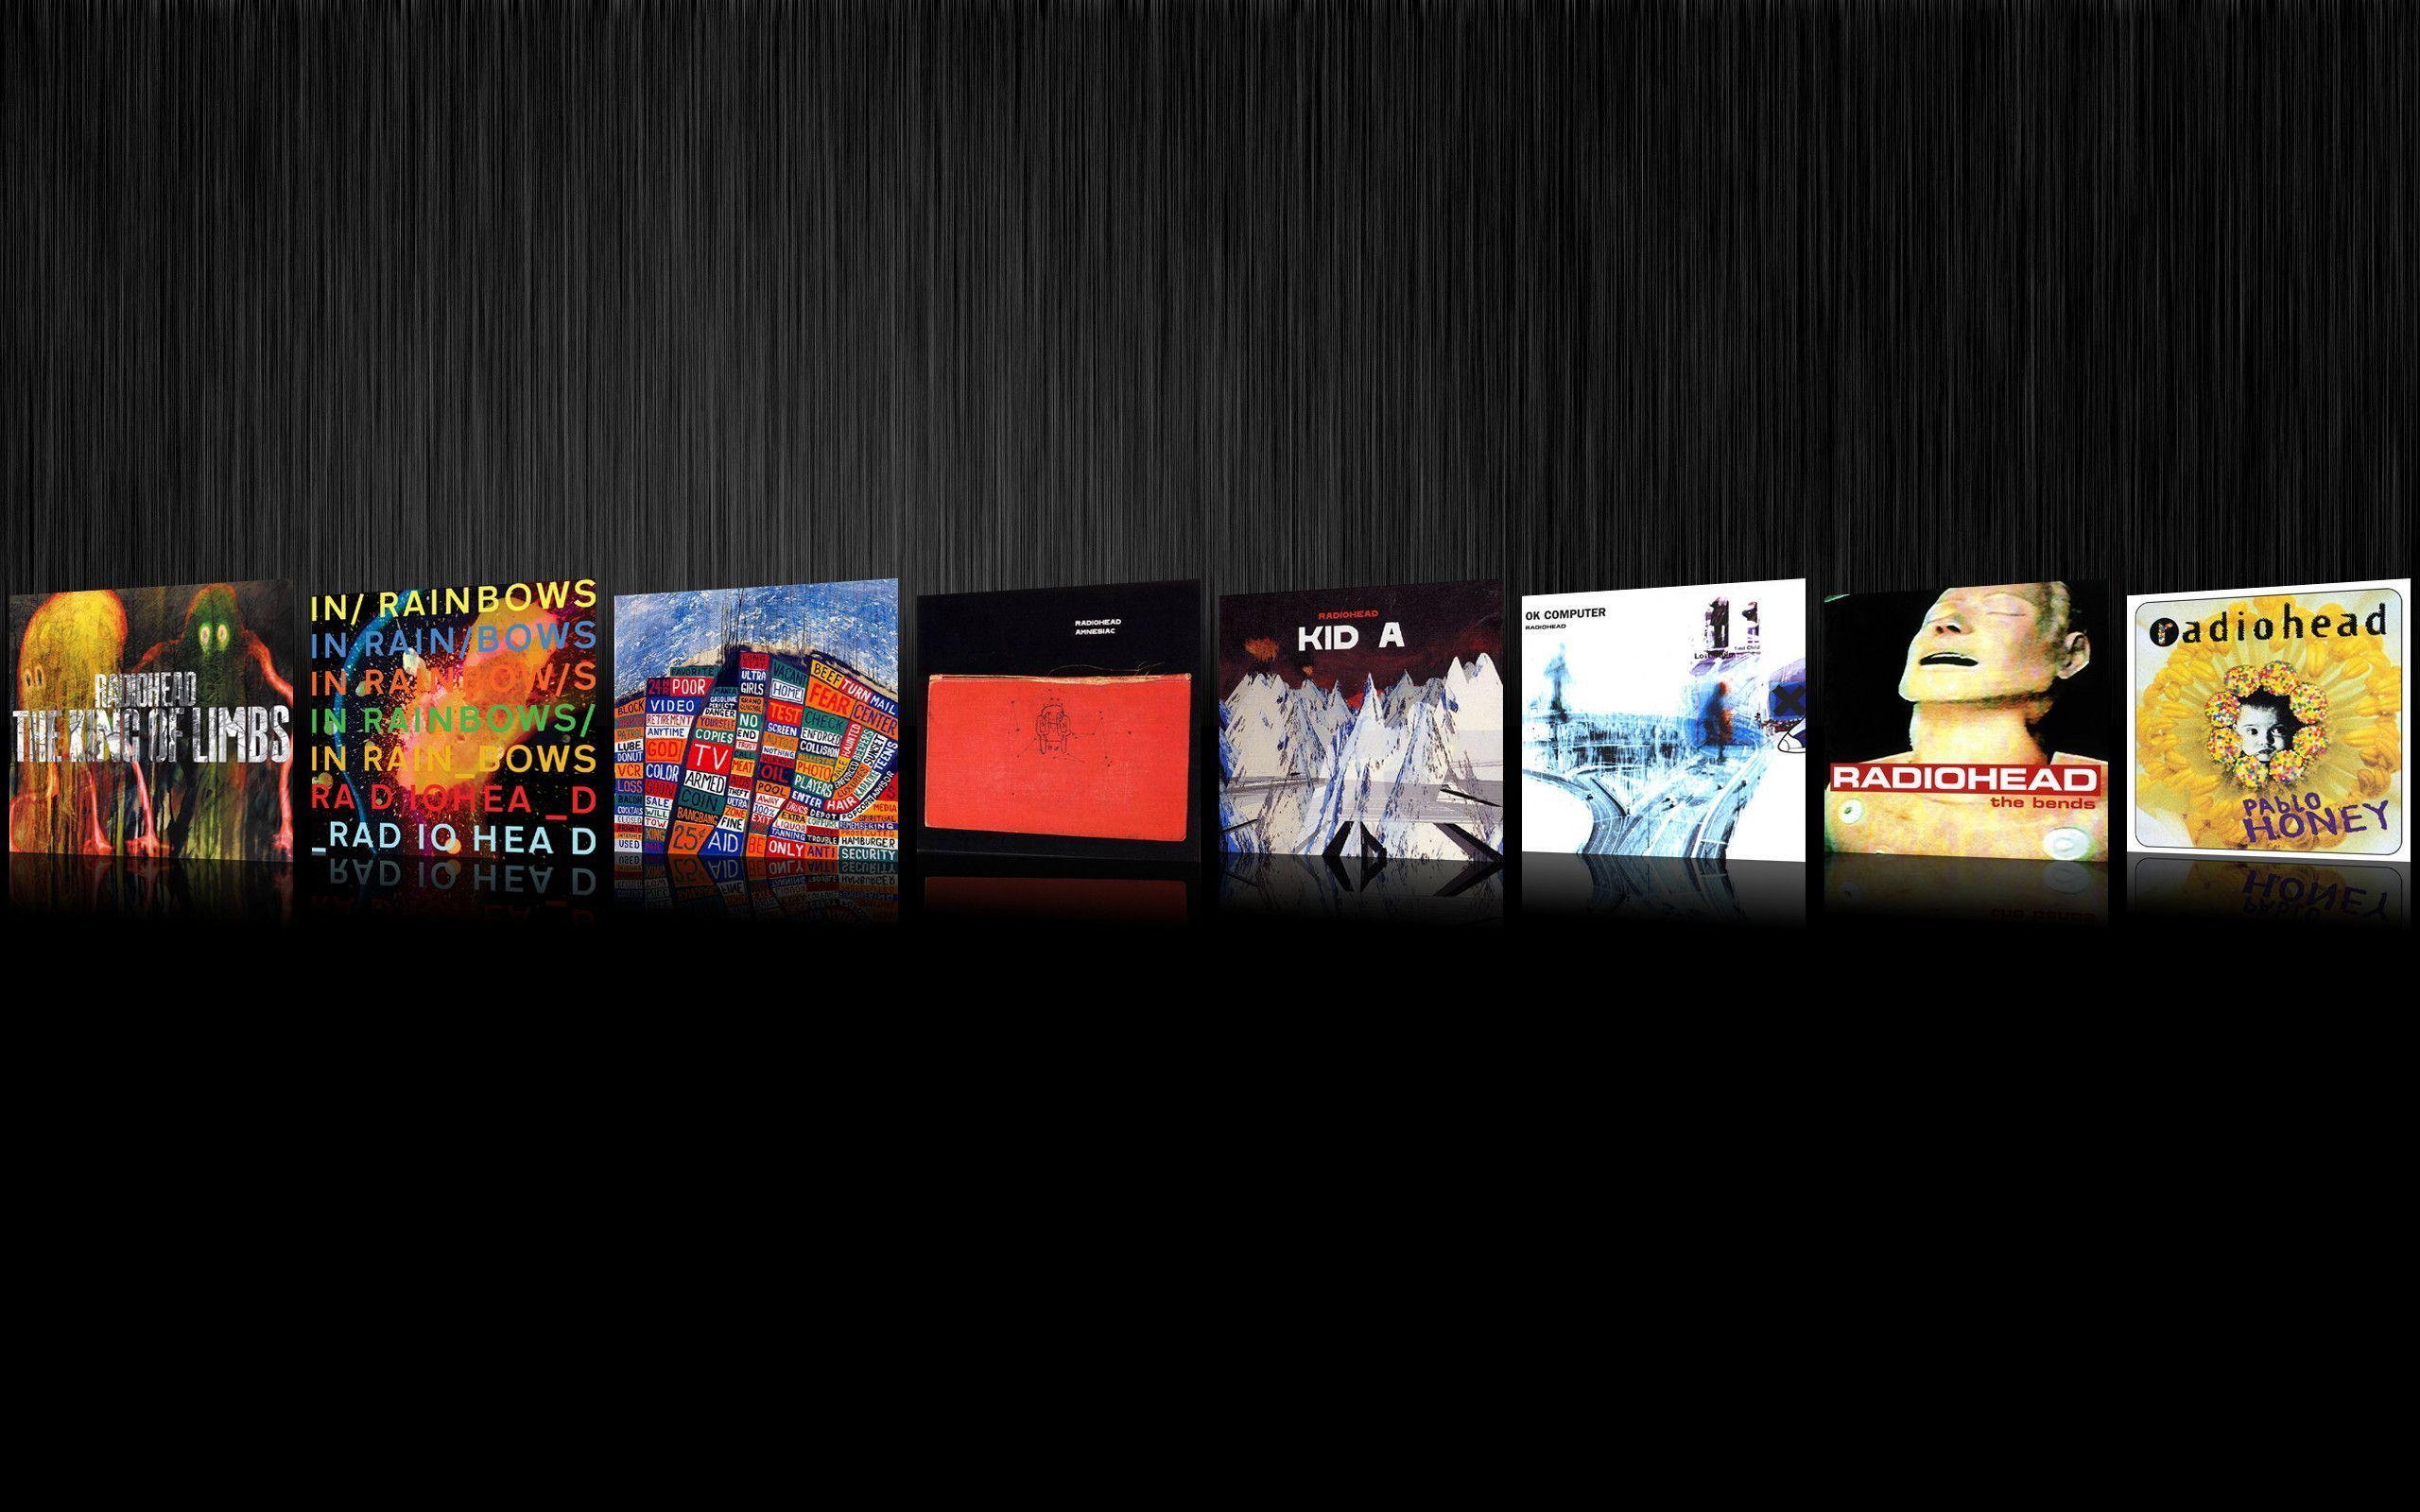 Radiohead Wallpaper. Radiohead, Top iphone wallpaper